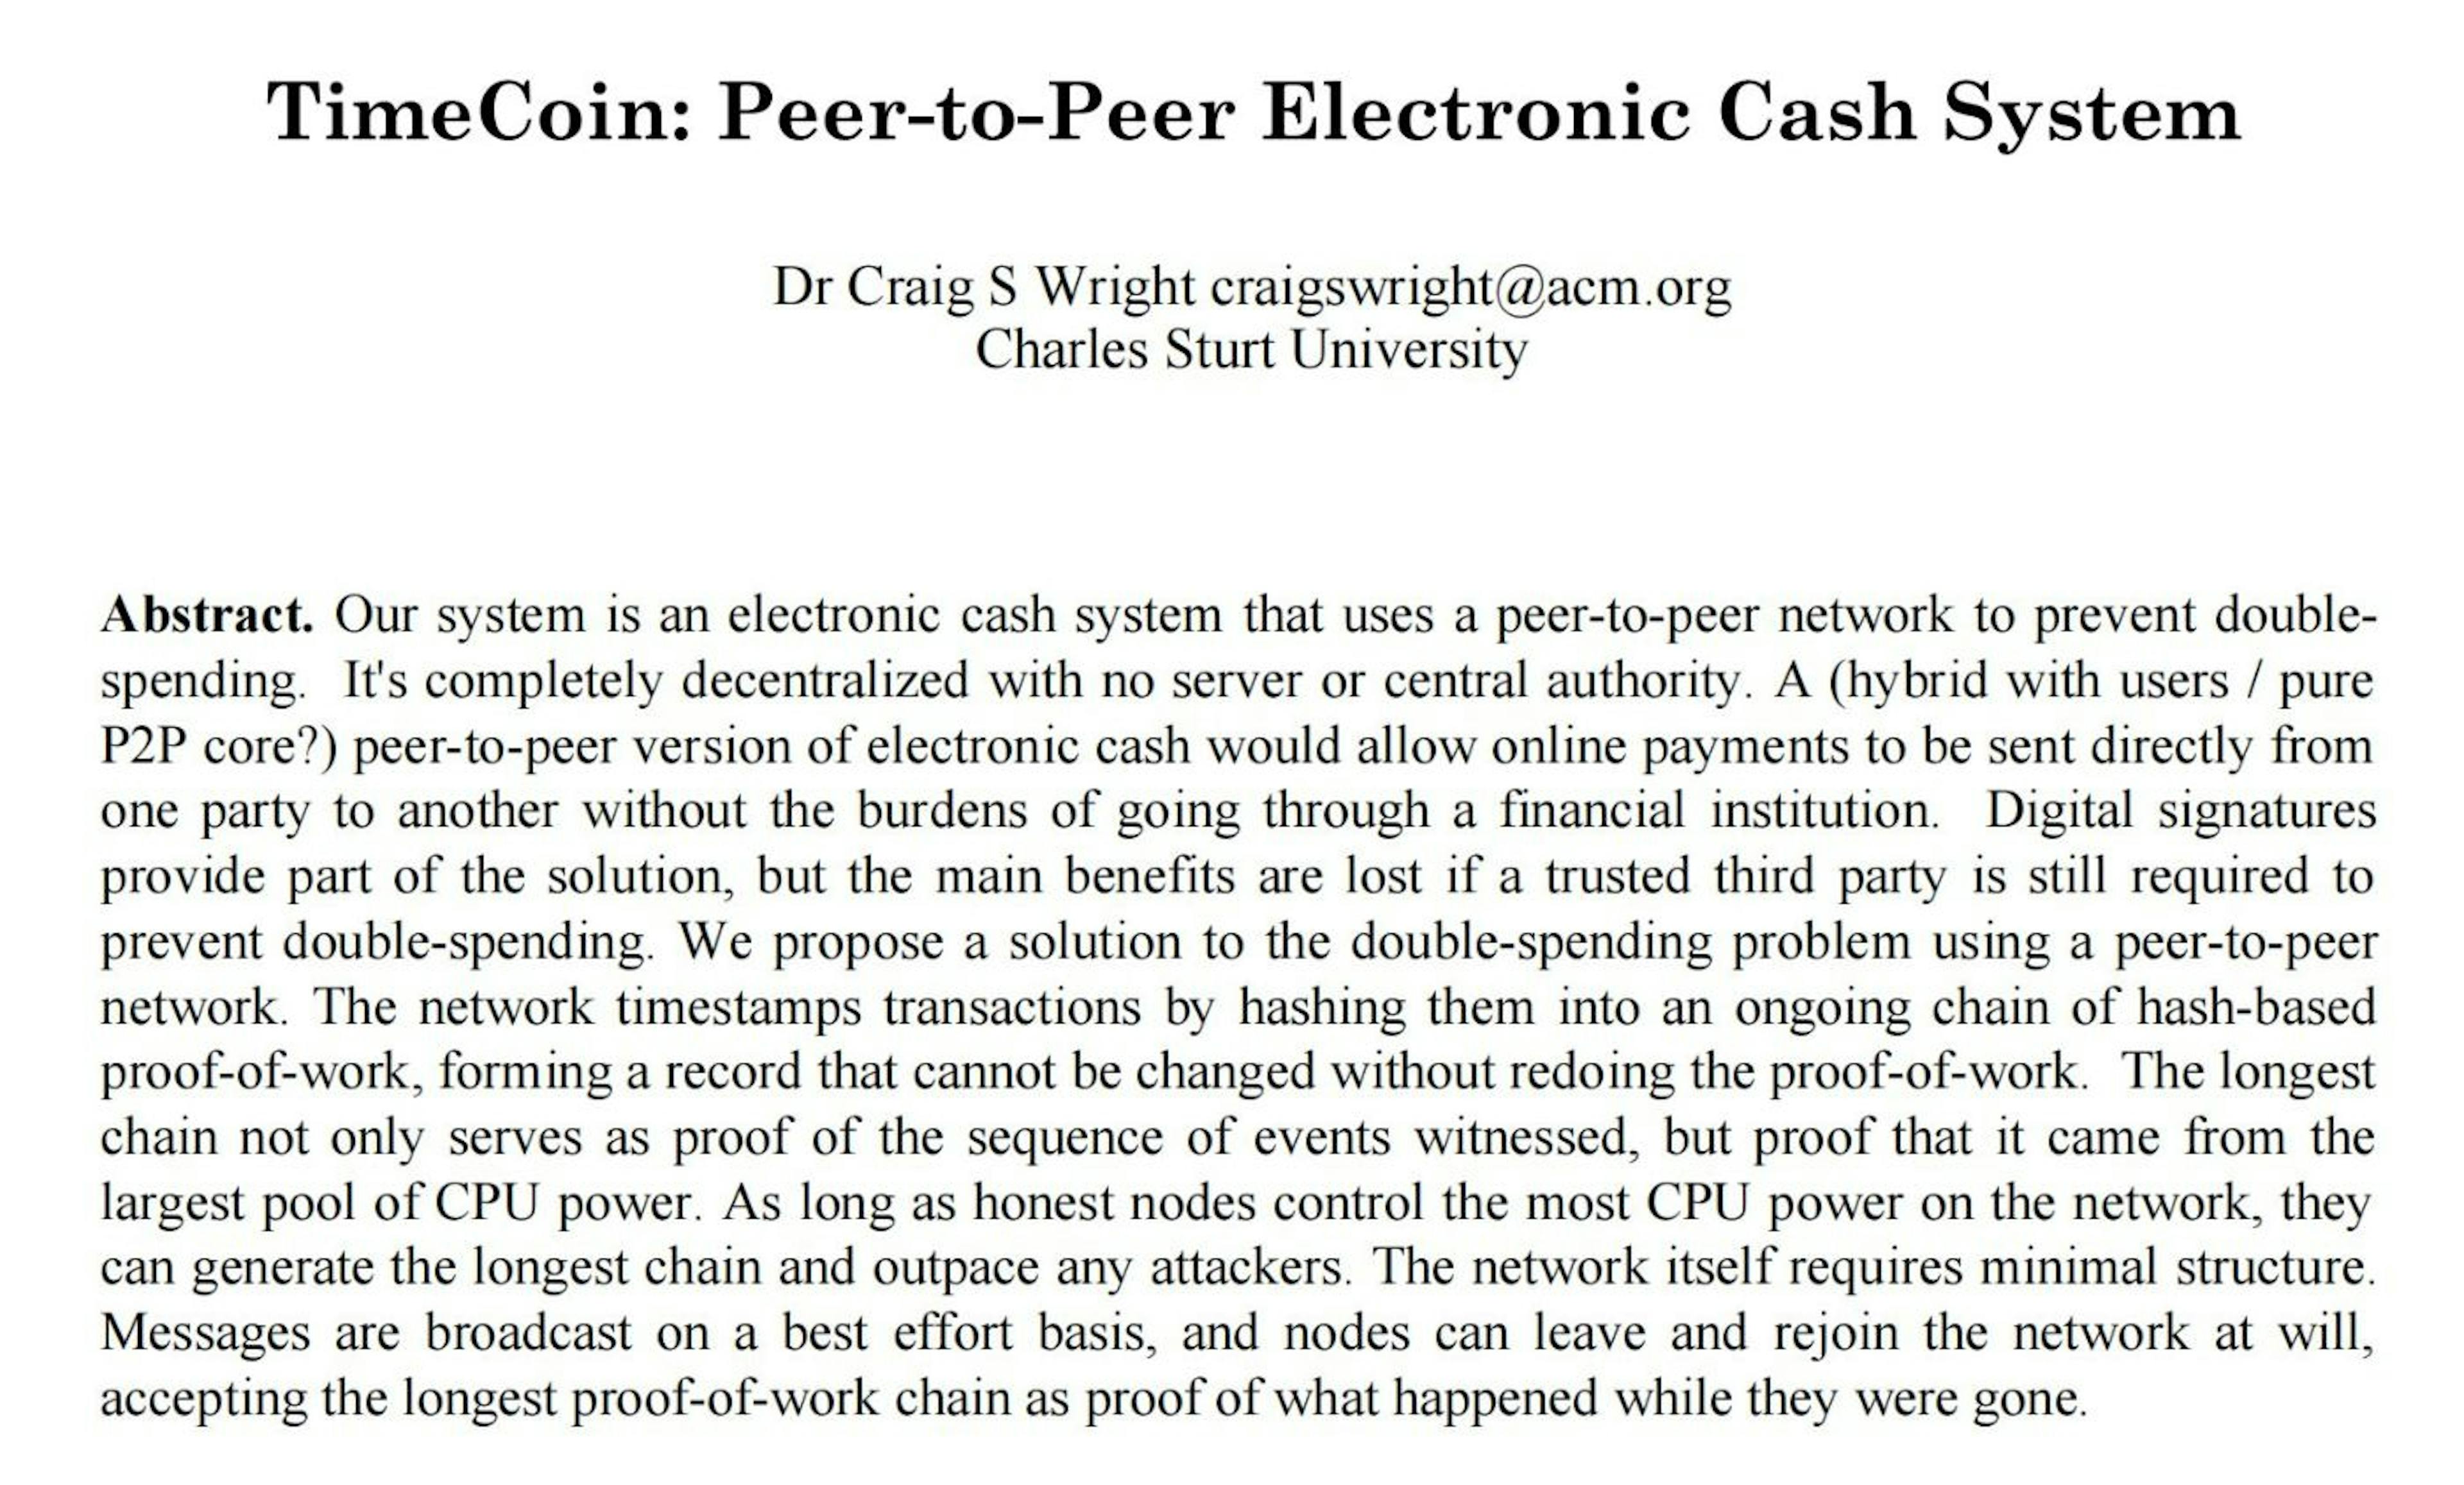 Vào năm 2019, Craig Wright lấy phiên bản PDF 2009 công khai của sách trắng Bitcoin từ bitcoin.org và cố gắng thay đổi nó, để nó trông giống như bản thảo sách trắng Bitcoin đầu năm 2008. Một phần trong quá trình giả mạo của anh ta là đổi Bitcoin thành TimeCoin (haha) và điều chỉnh siêu dữ liệu của tệp PDF gốc một cách cẩu thả.